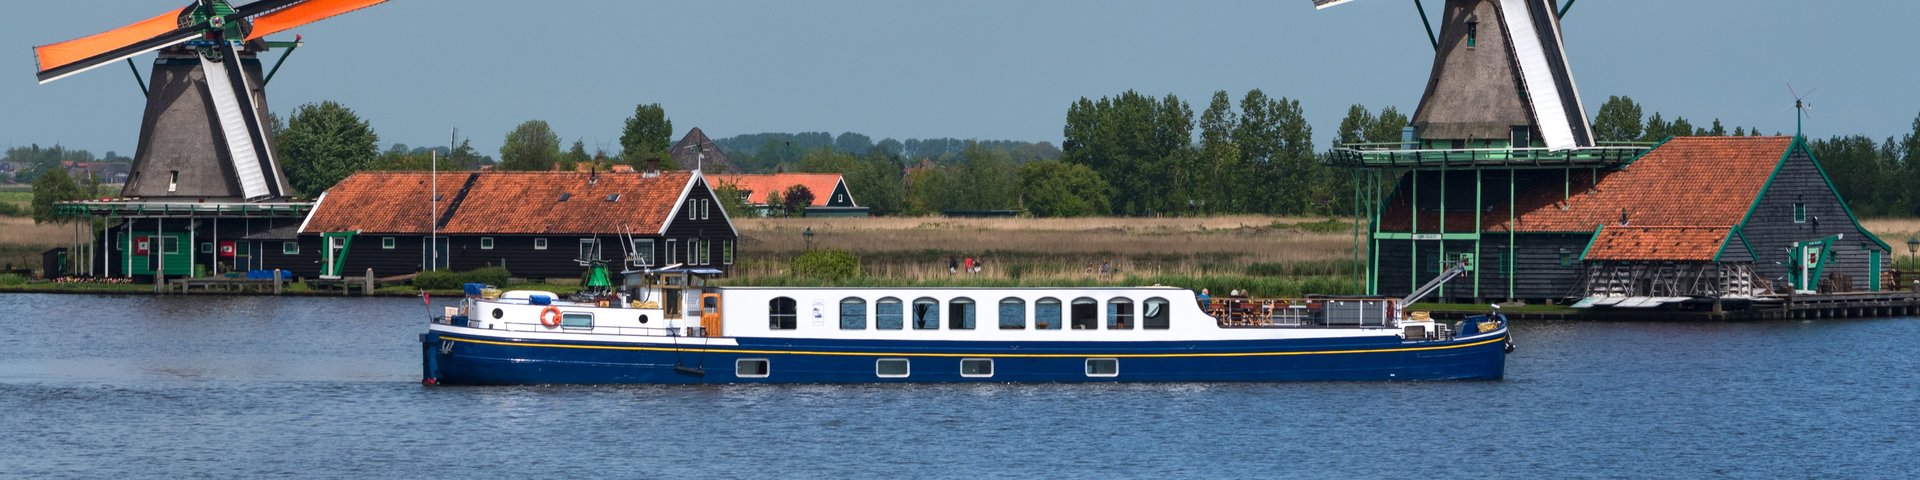 Flusshotelschiff Panache in Holland